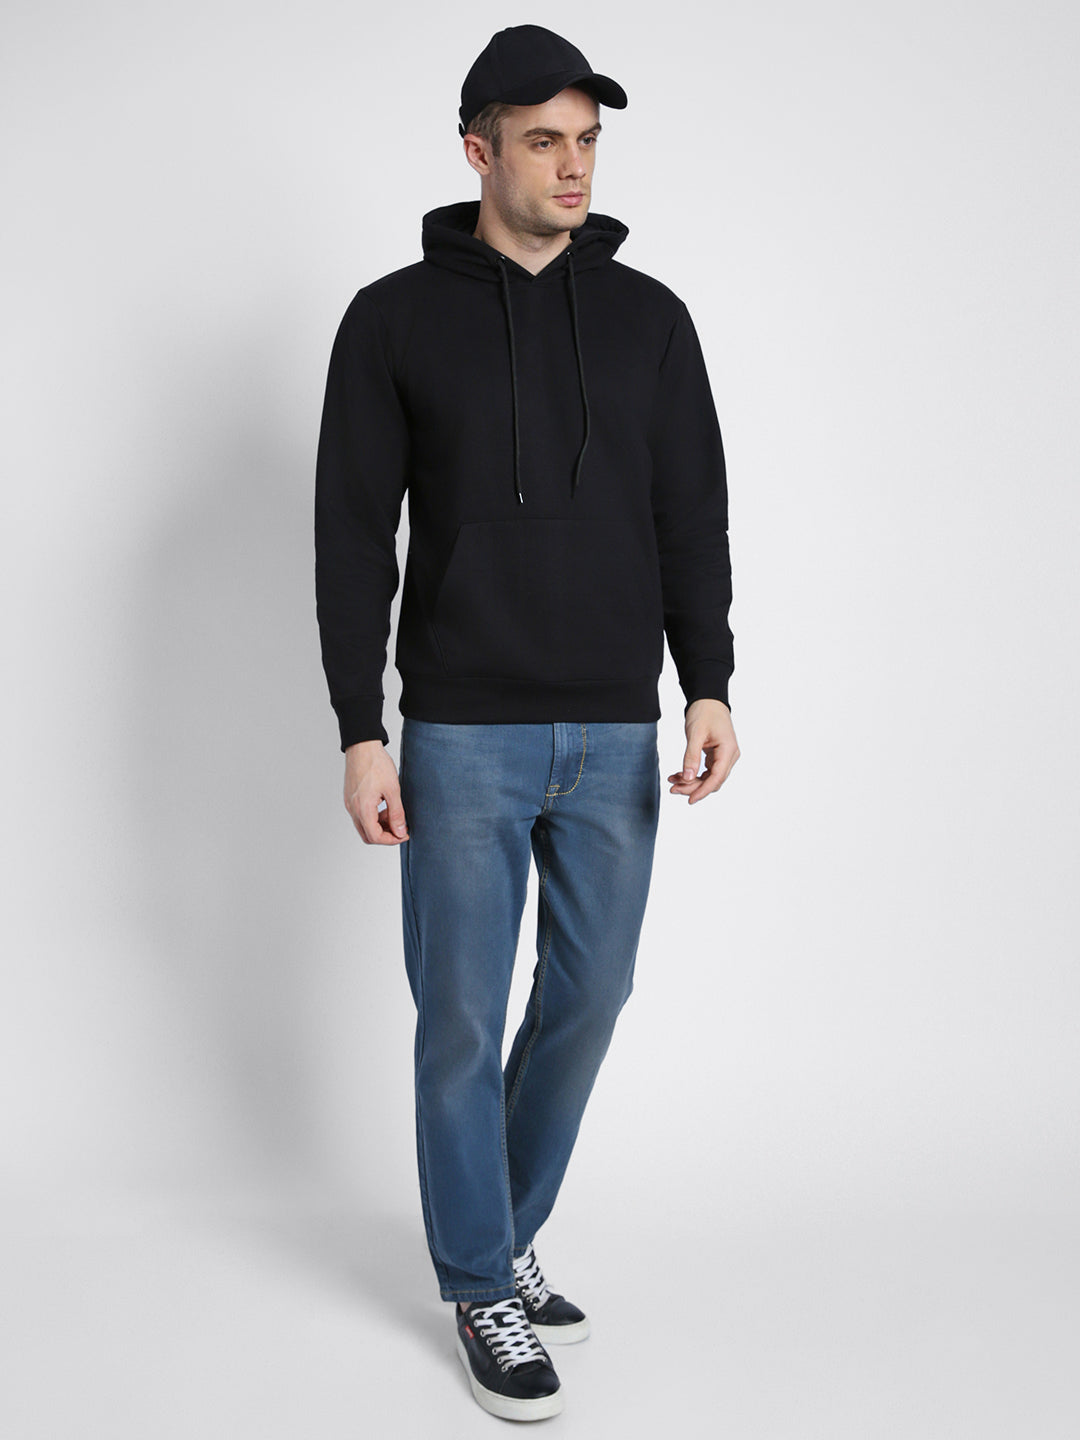 Dennis Lingo Men's Black  Full Sleeves Zipper Hoodie Sweatshirt